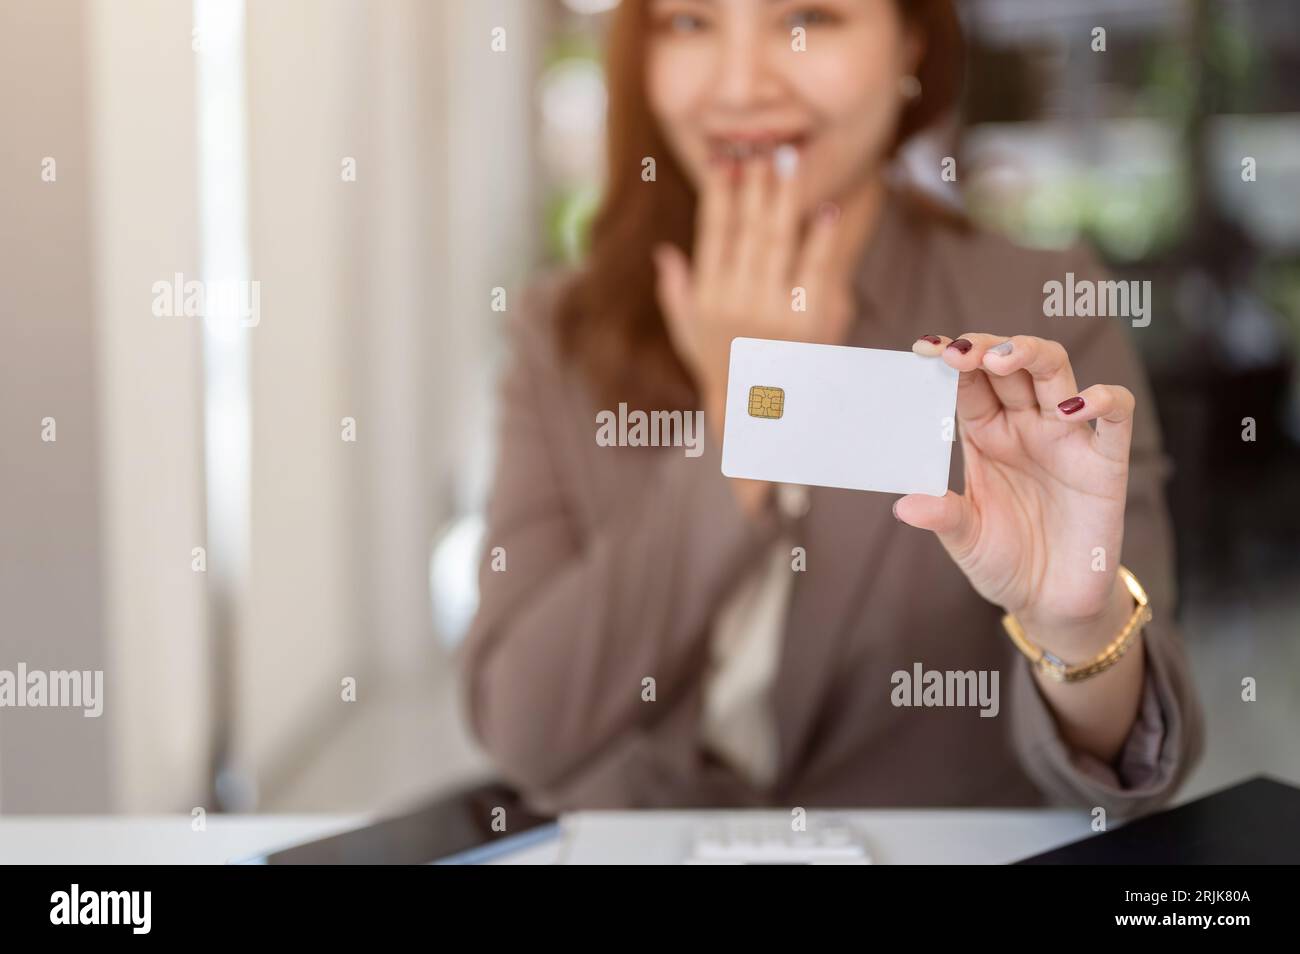 Image rapprochée d'une femme asiatique choquée et excitée montrant une carte de crédit ou de débit à l'appareil photo alors qu'elle était assise à une table. Banque D'Images